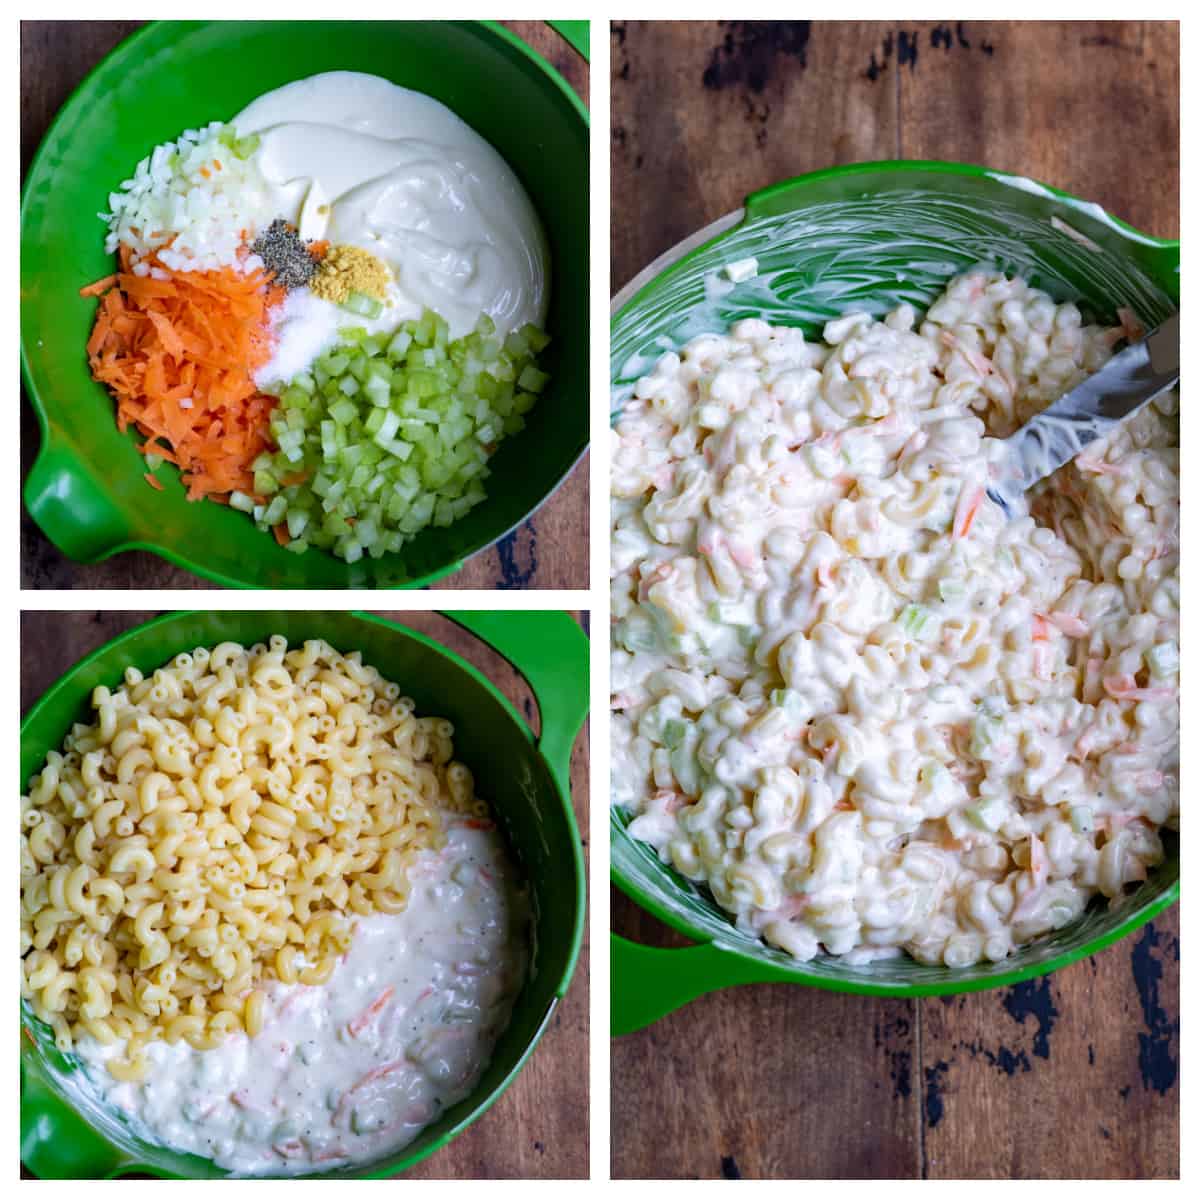 Collage of assembling macaroni salad.